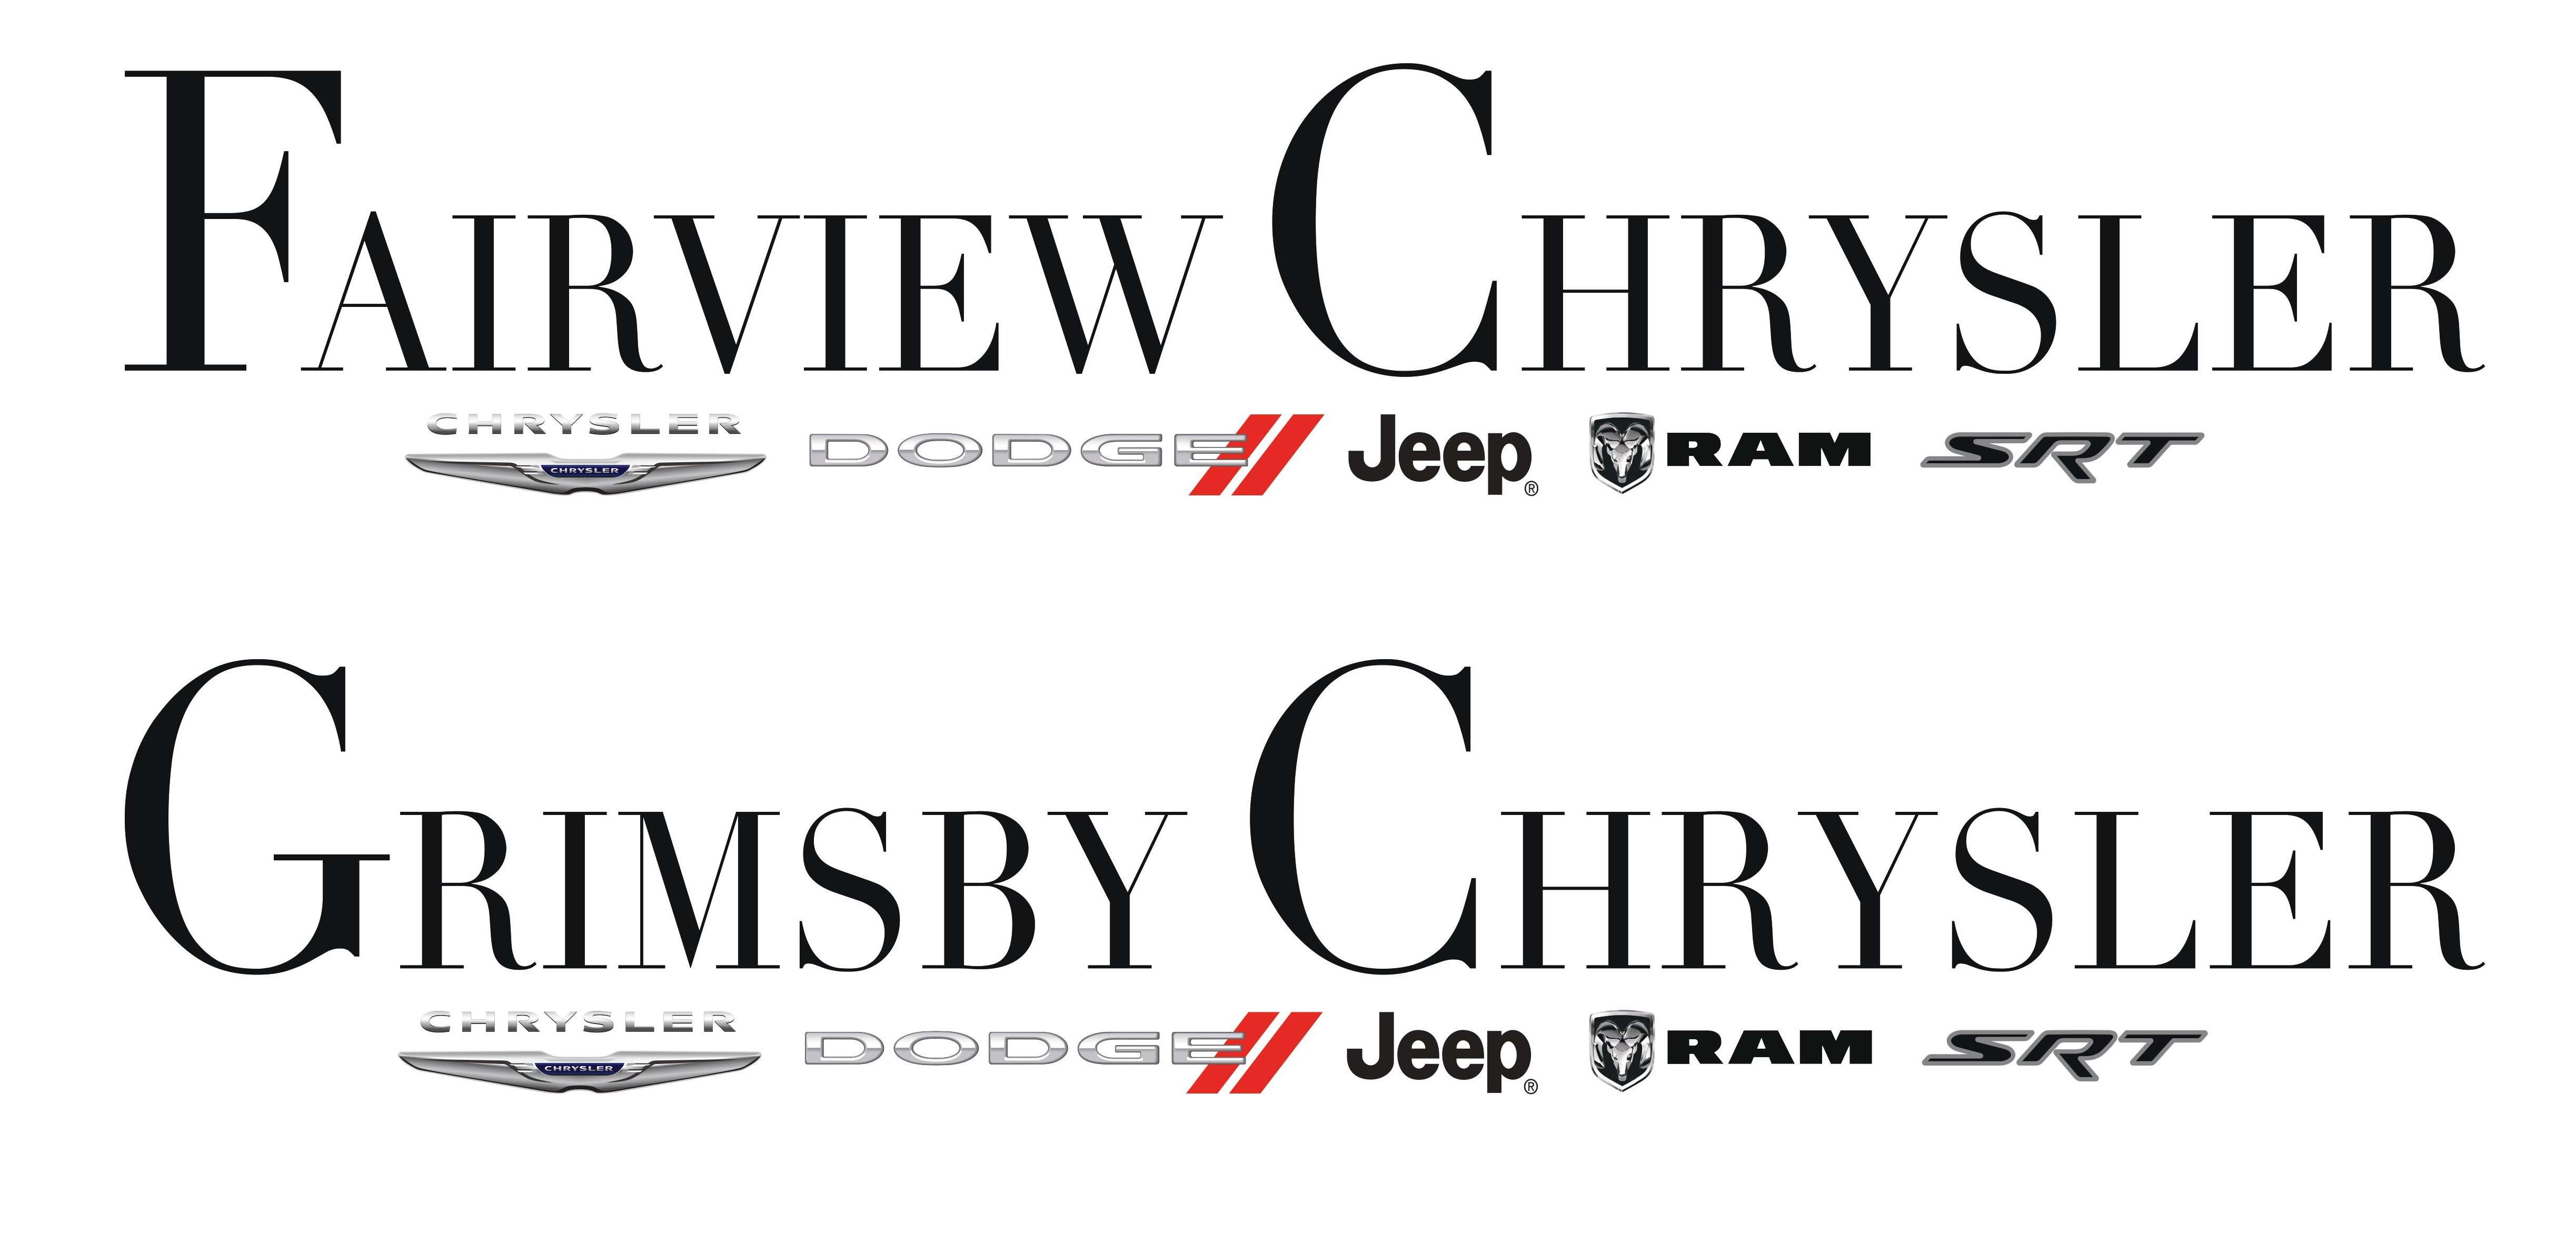 Grimsby Chrysler / Fairview Chrysler